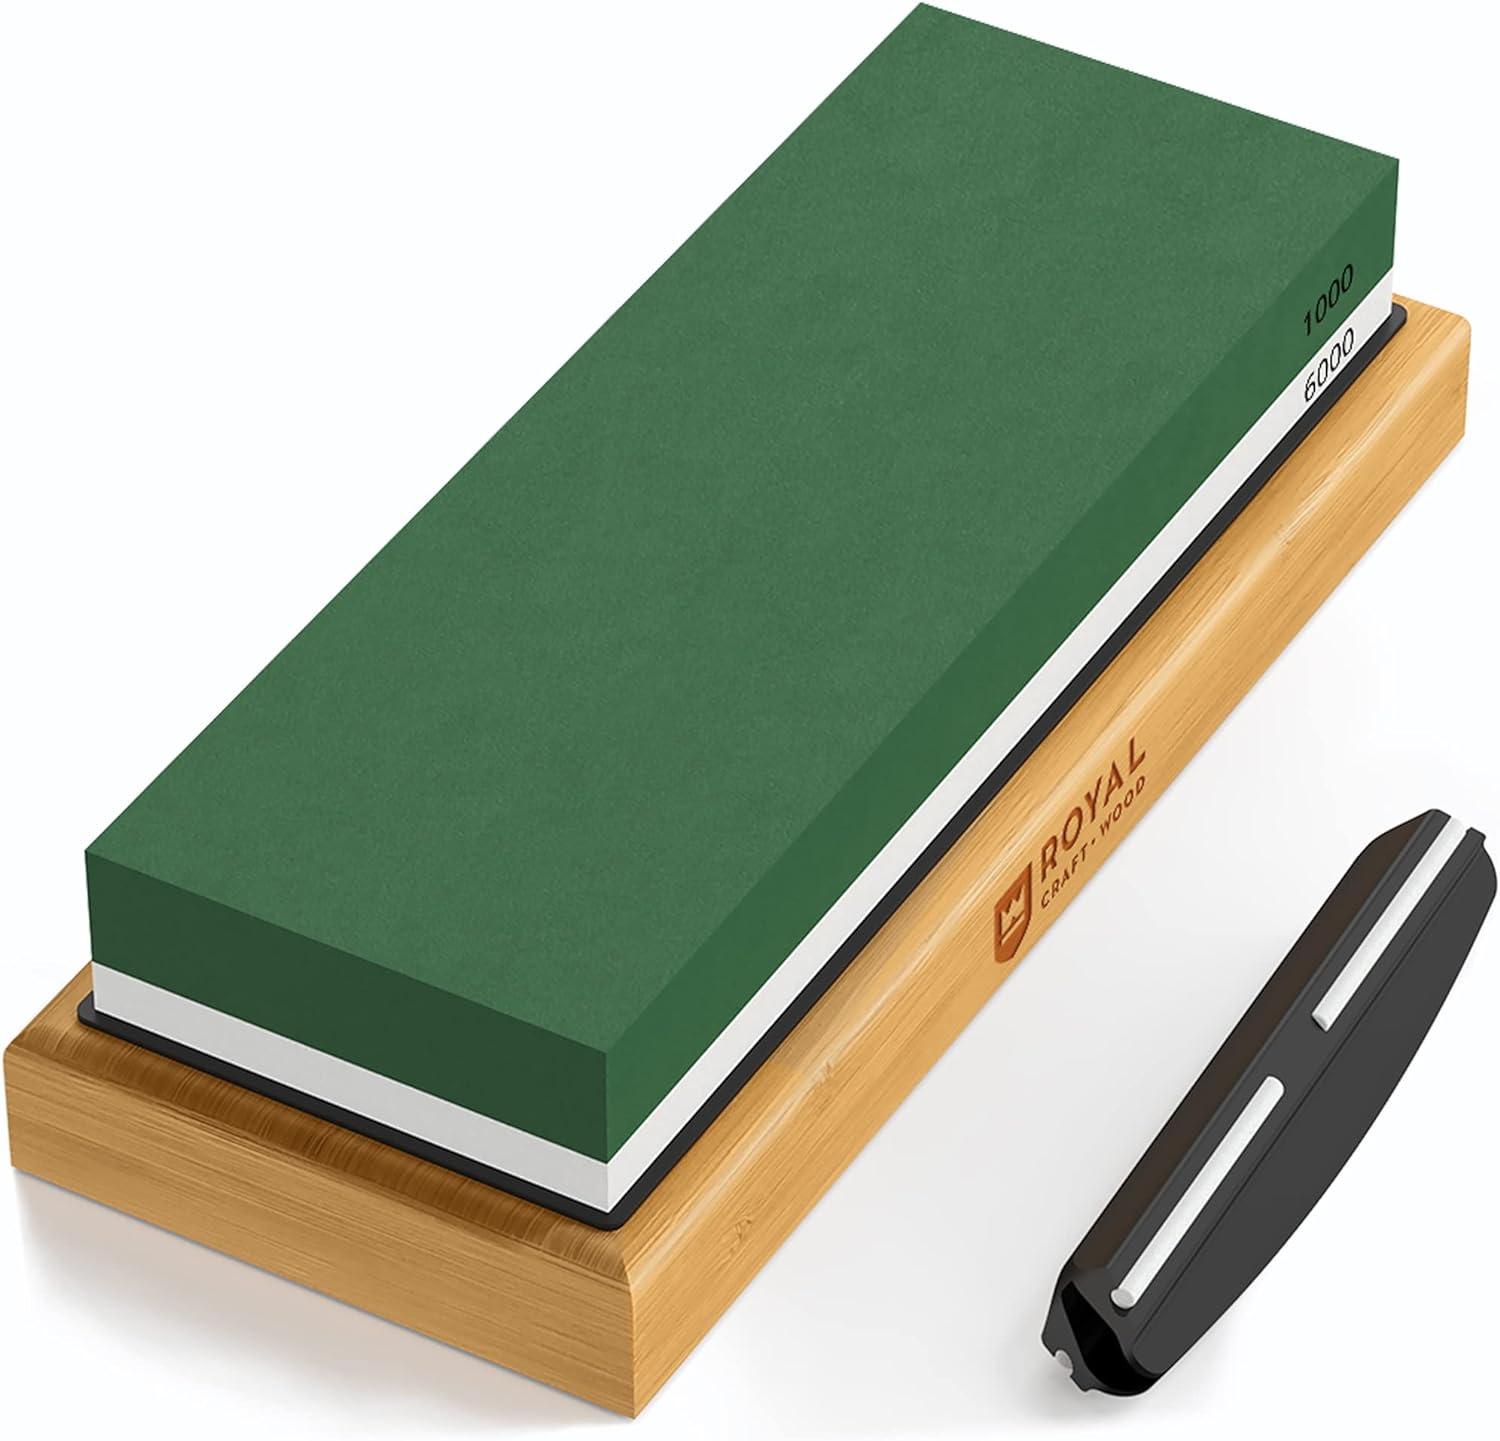 Royal Craft Wood Premium Whetstone Knife Sharpener - 2 Side Grit 1000/6000 Knife Sharpening Wet Stone Kit w/ Sharpening Angle Guide, Non-Slip Ba